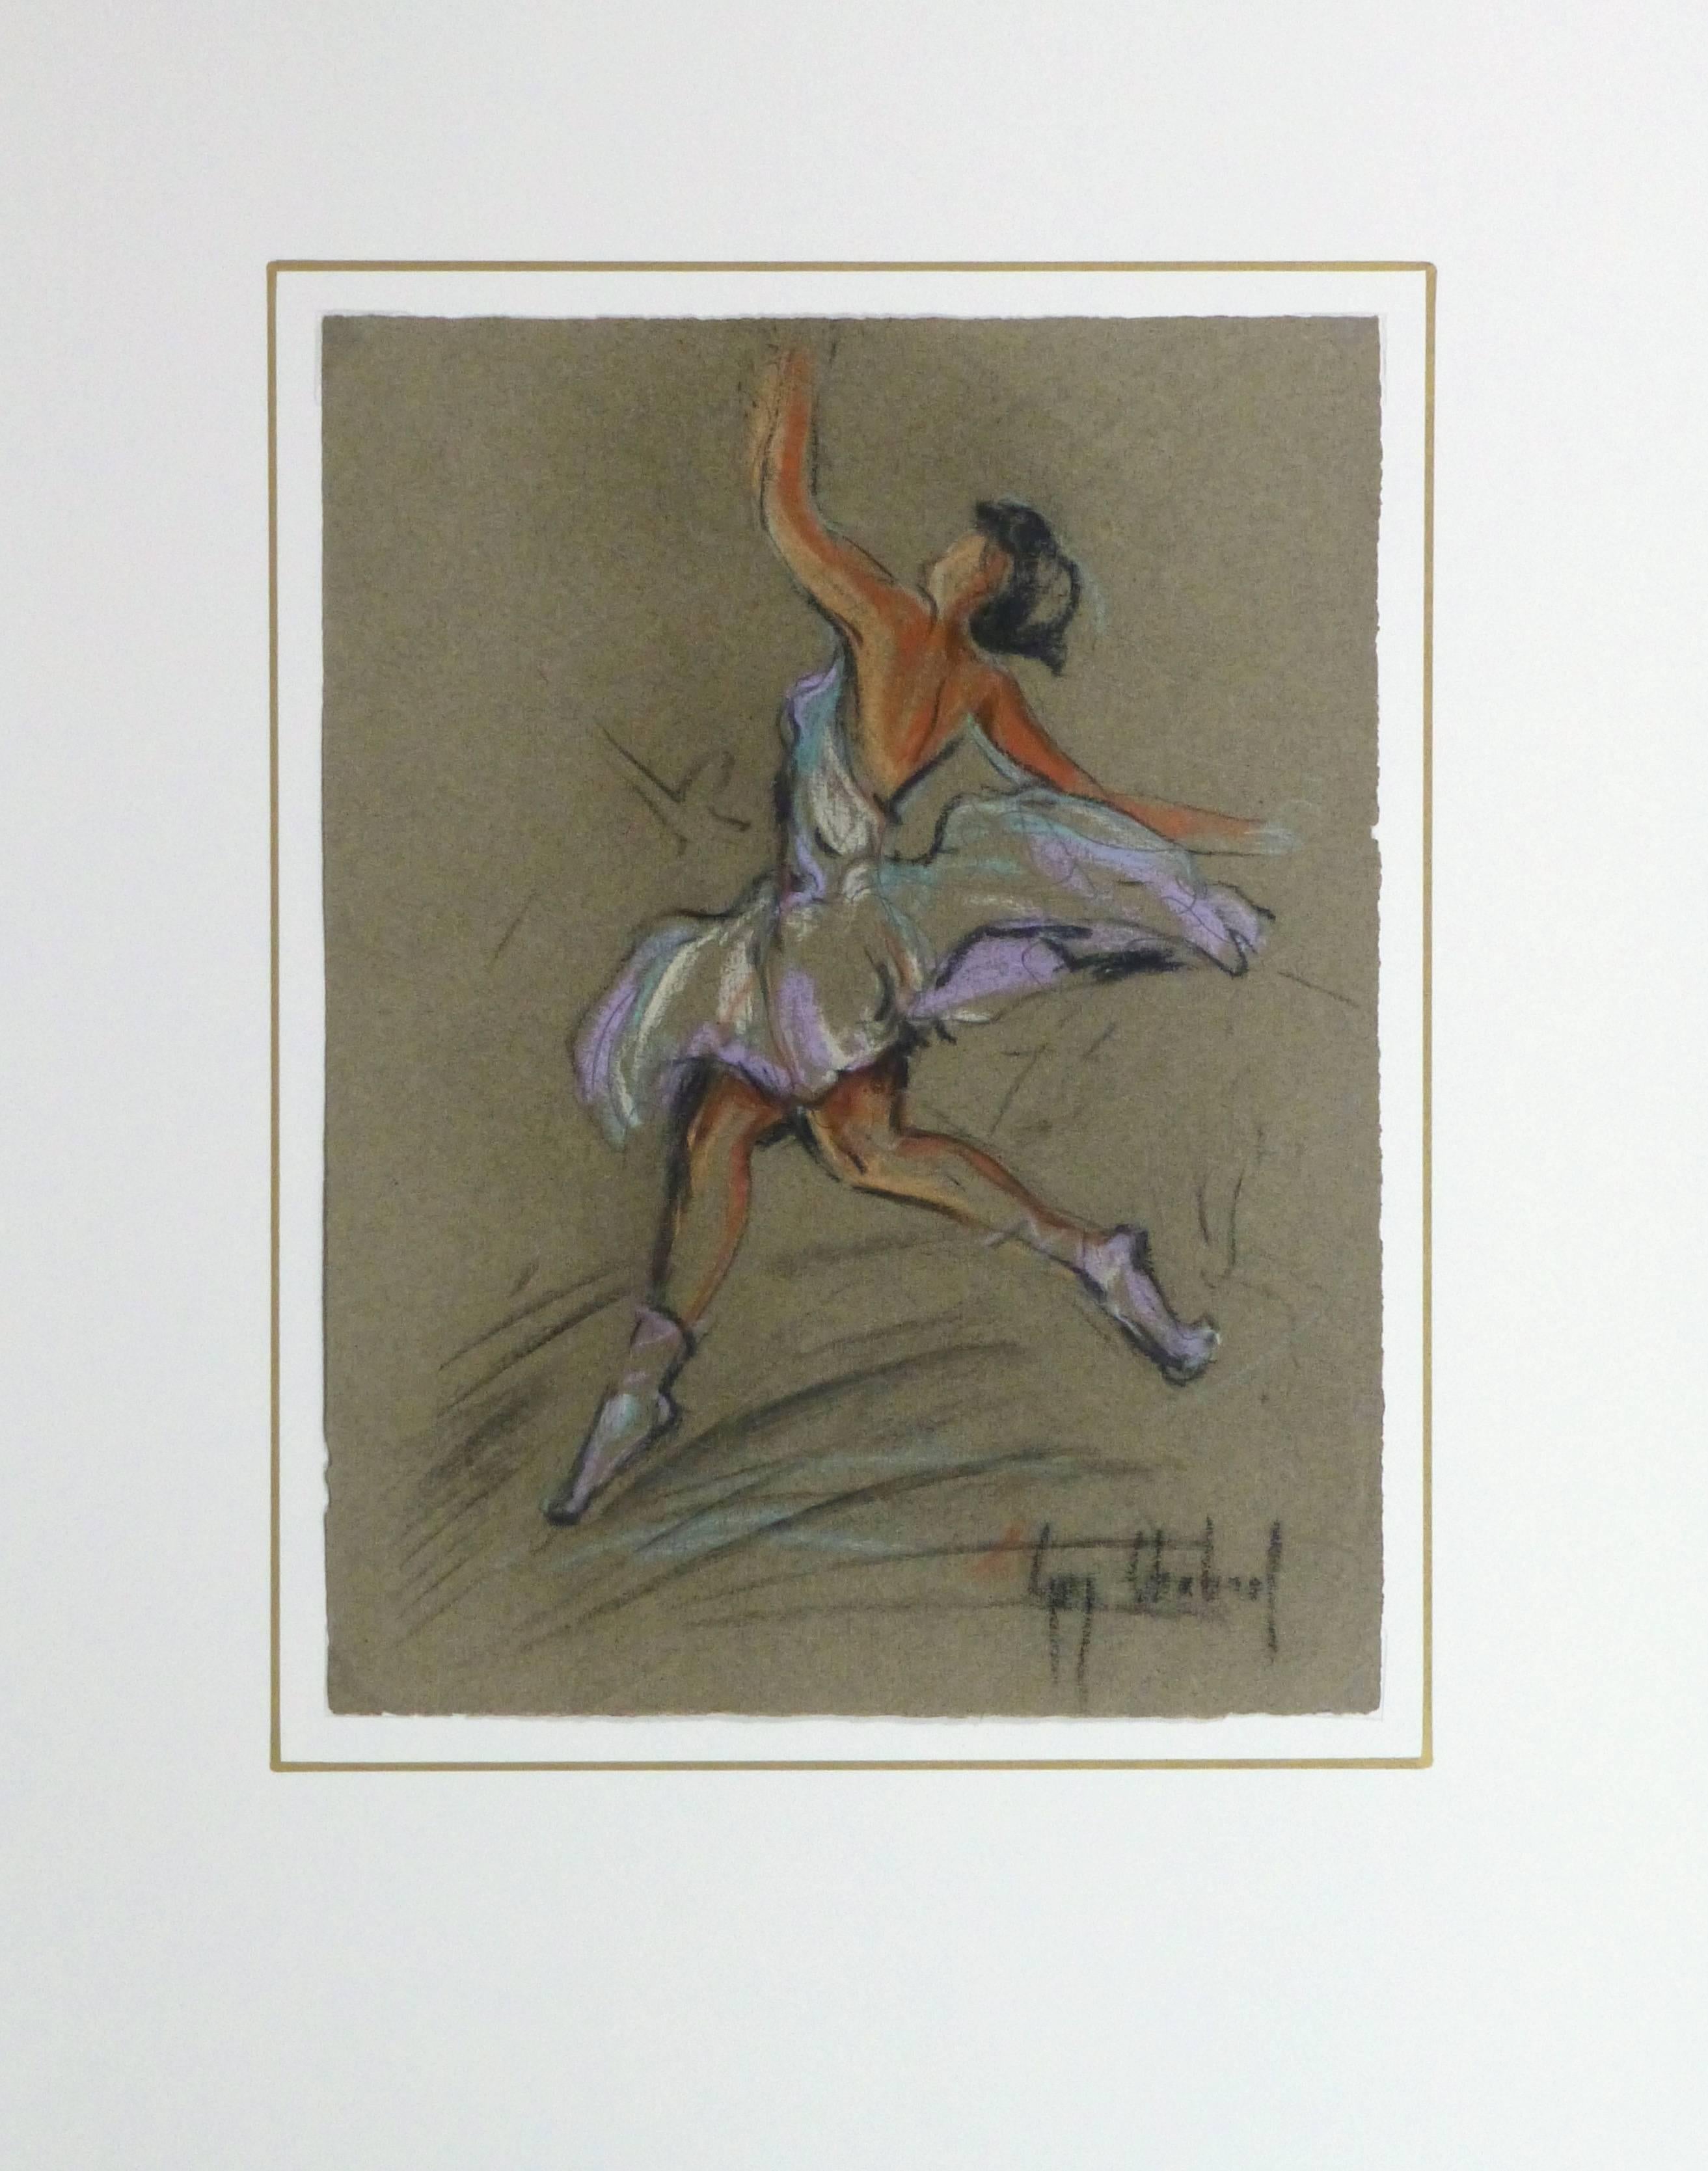 Gracieux dessin au pastel et au fusain d'une danseuse de ballet en mouvement par l'artiste Guy Chabrol, vers 1950. Signé en bas à droite.

Œuvre d'art originale et unique sur papier, présentée sur un tapis blanc avec une bordure dorée. Le tapis